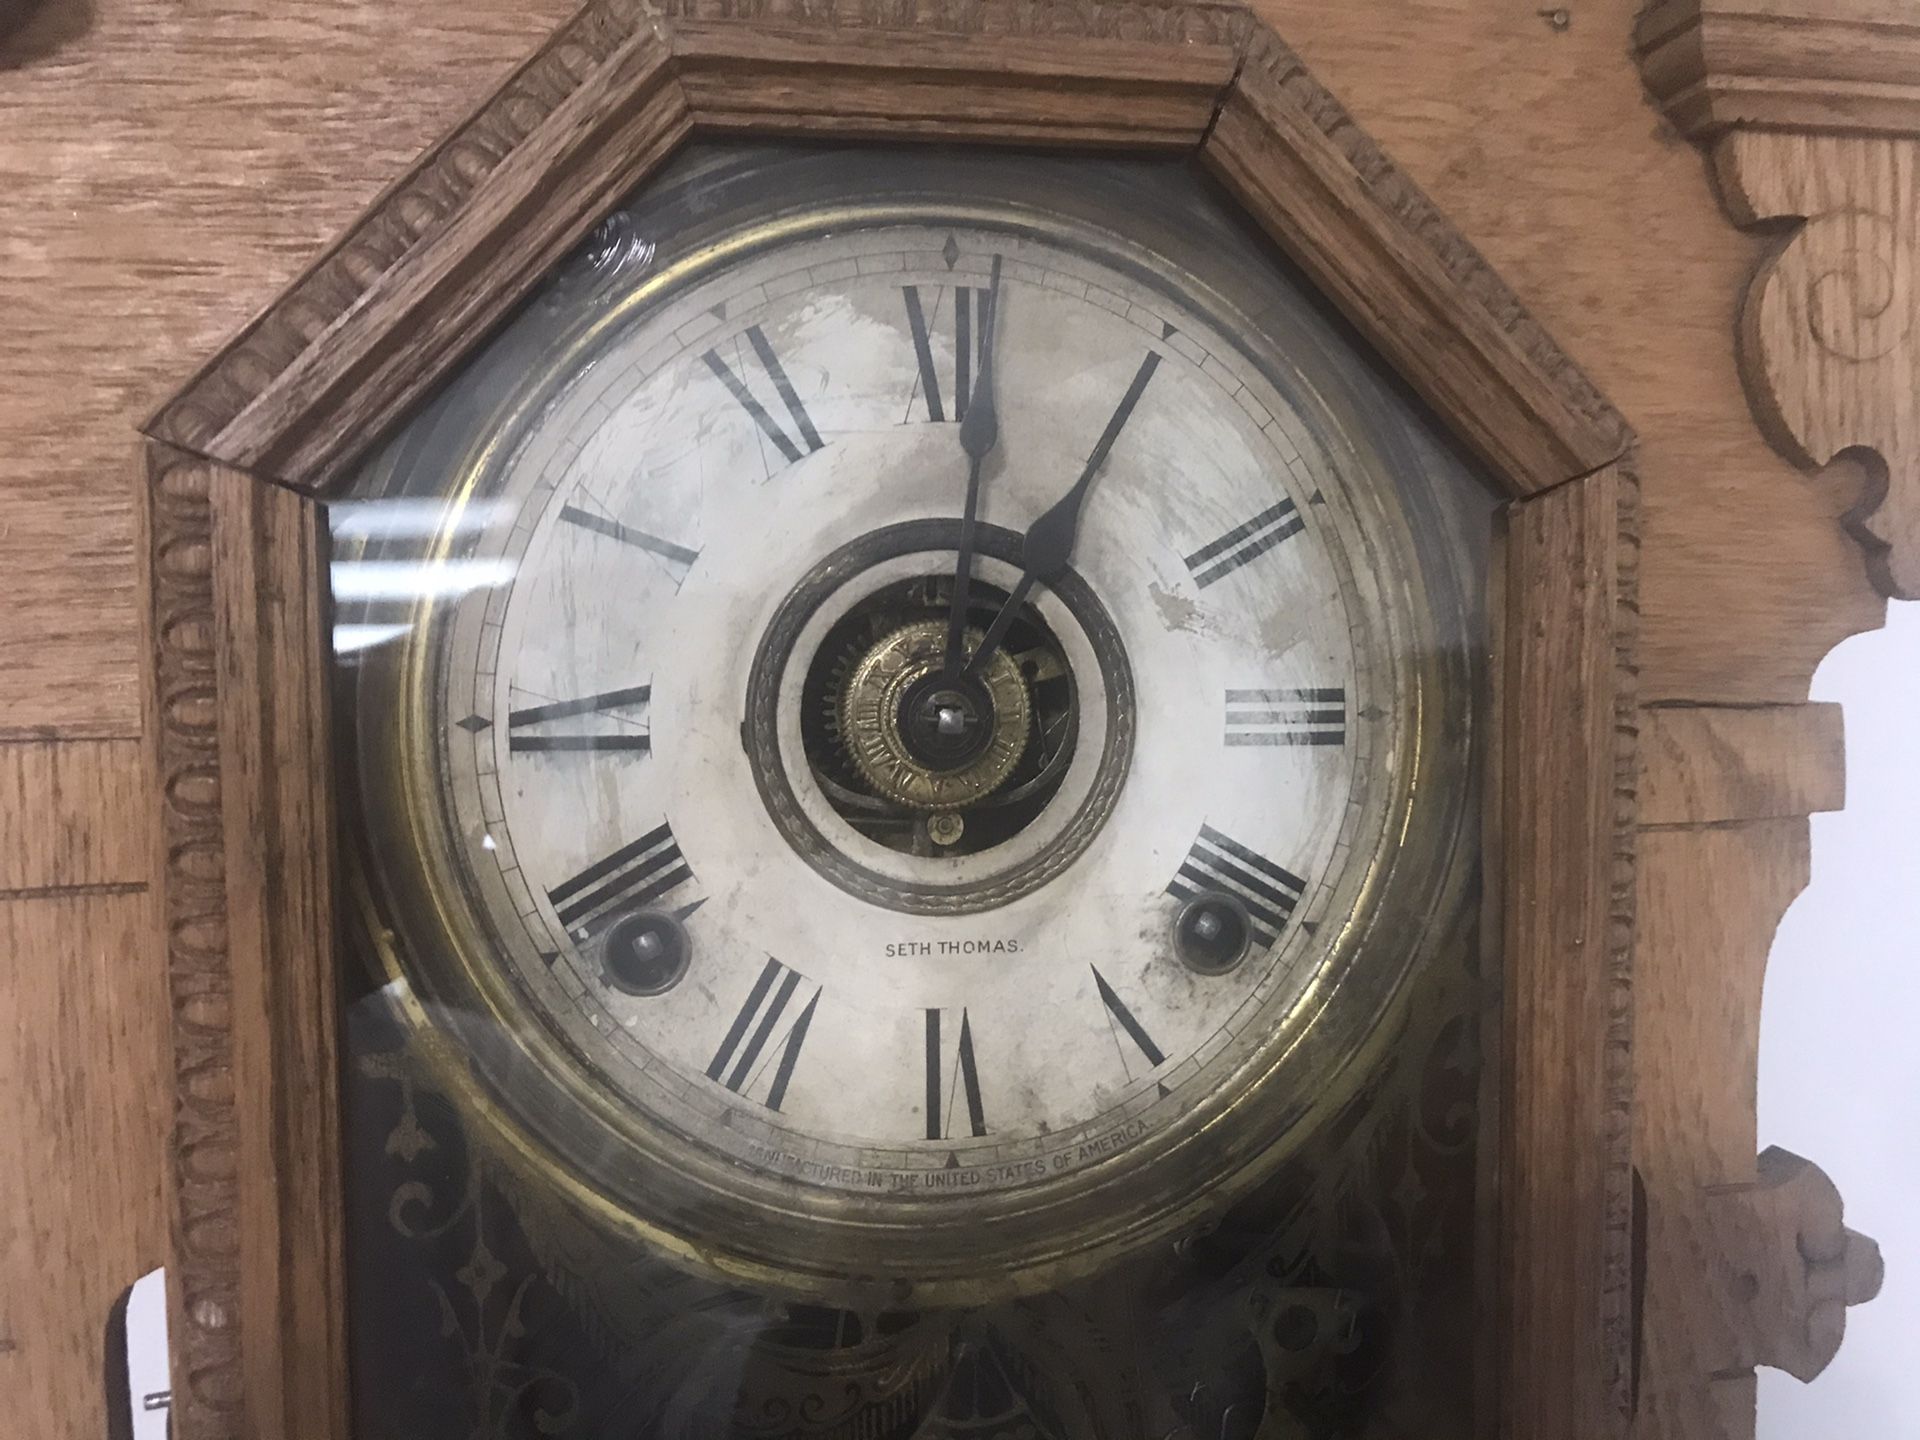 Seth Thomas antique clock.